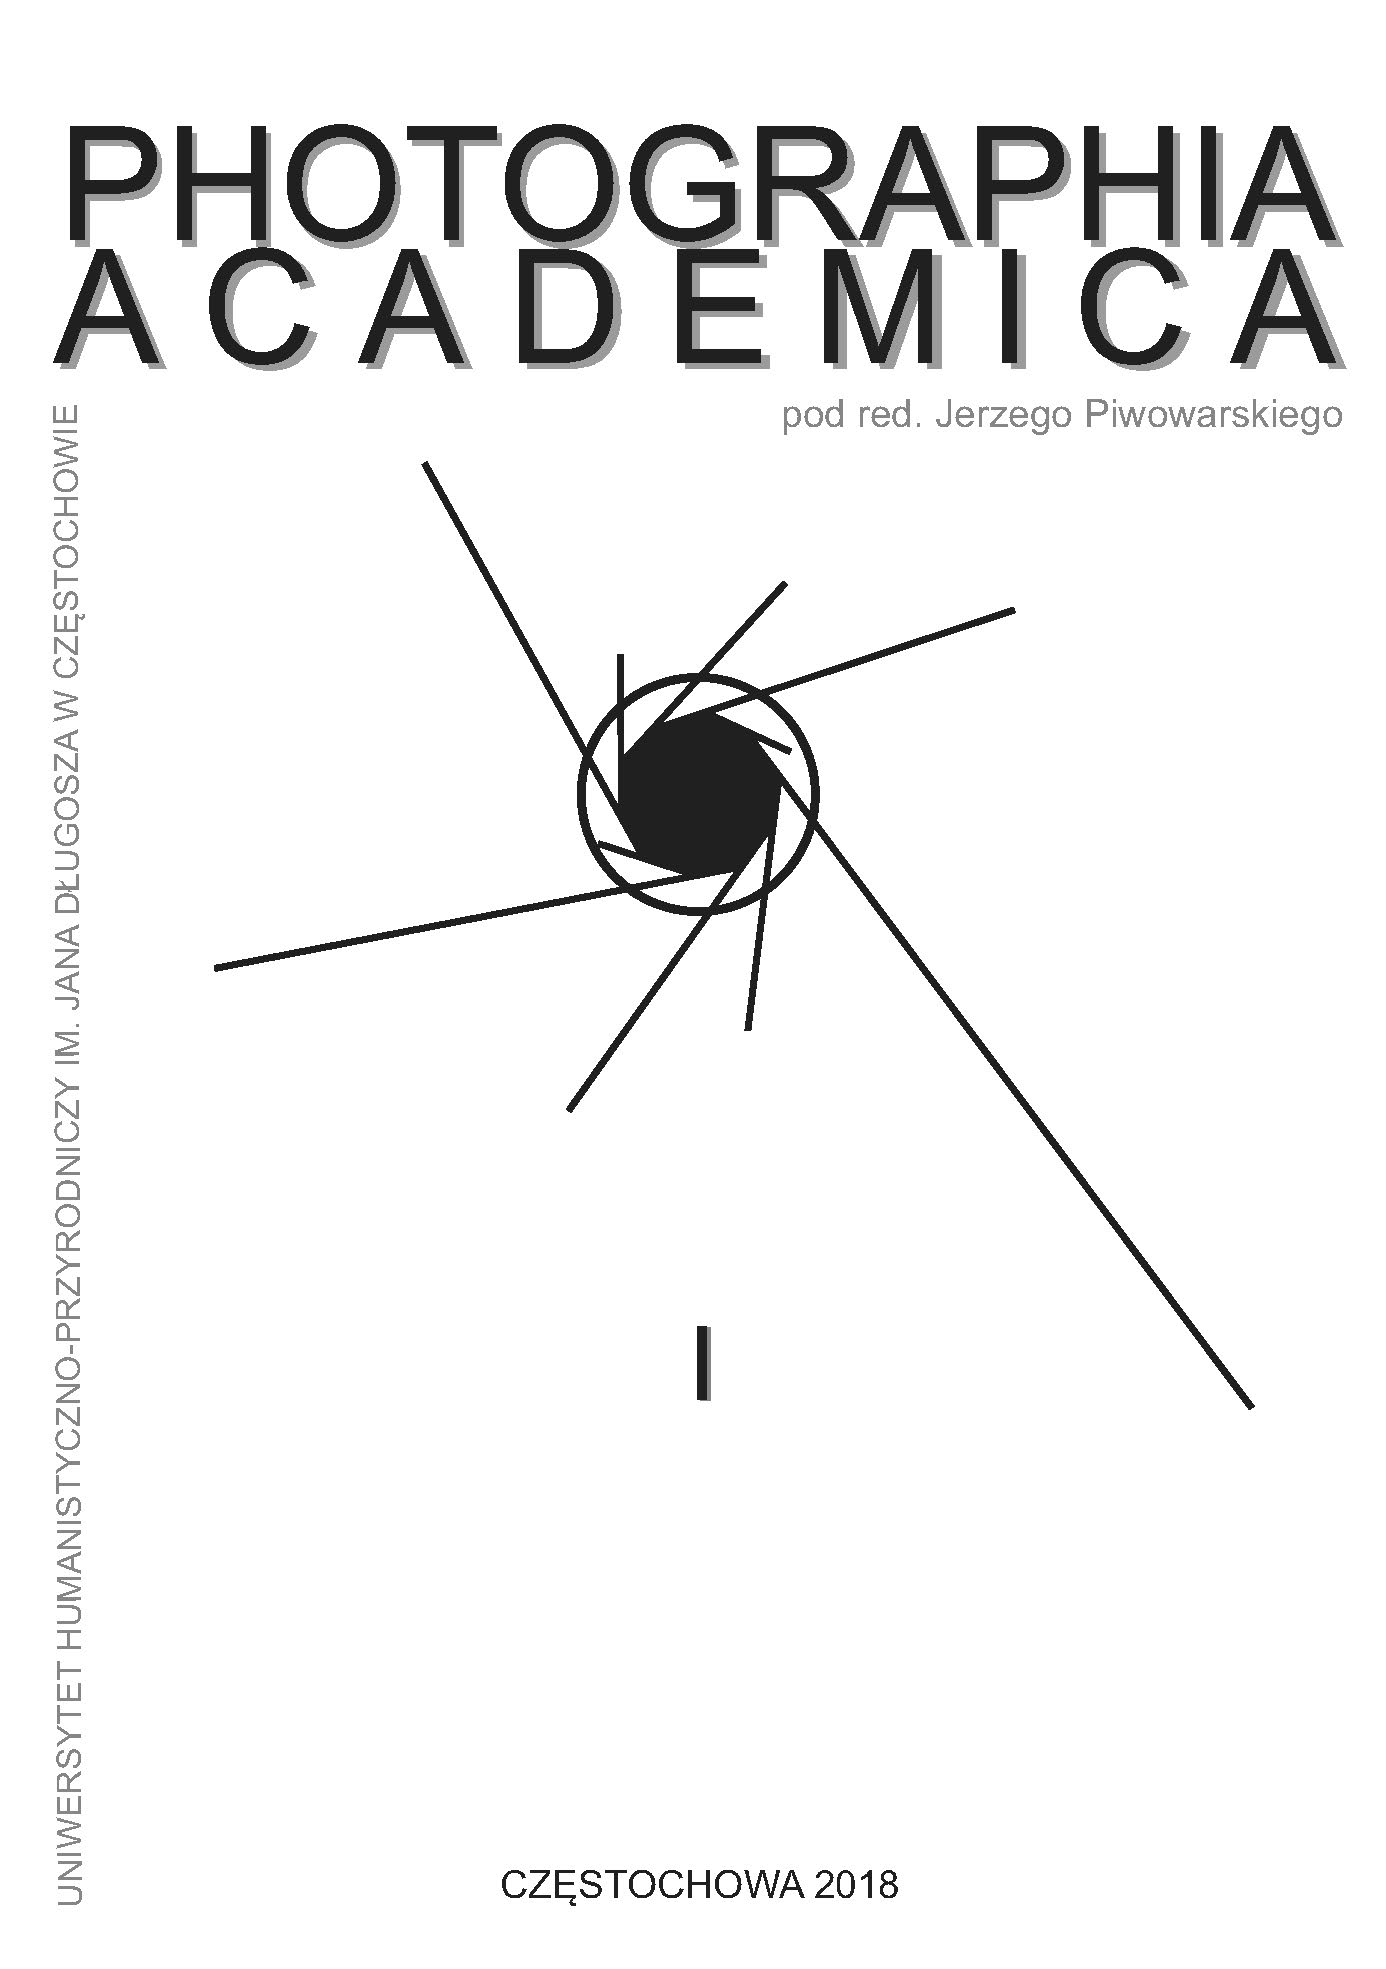 Photographia Academica